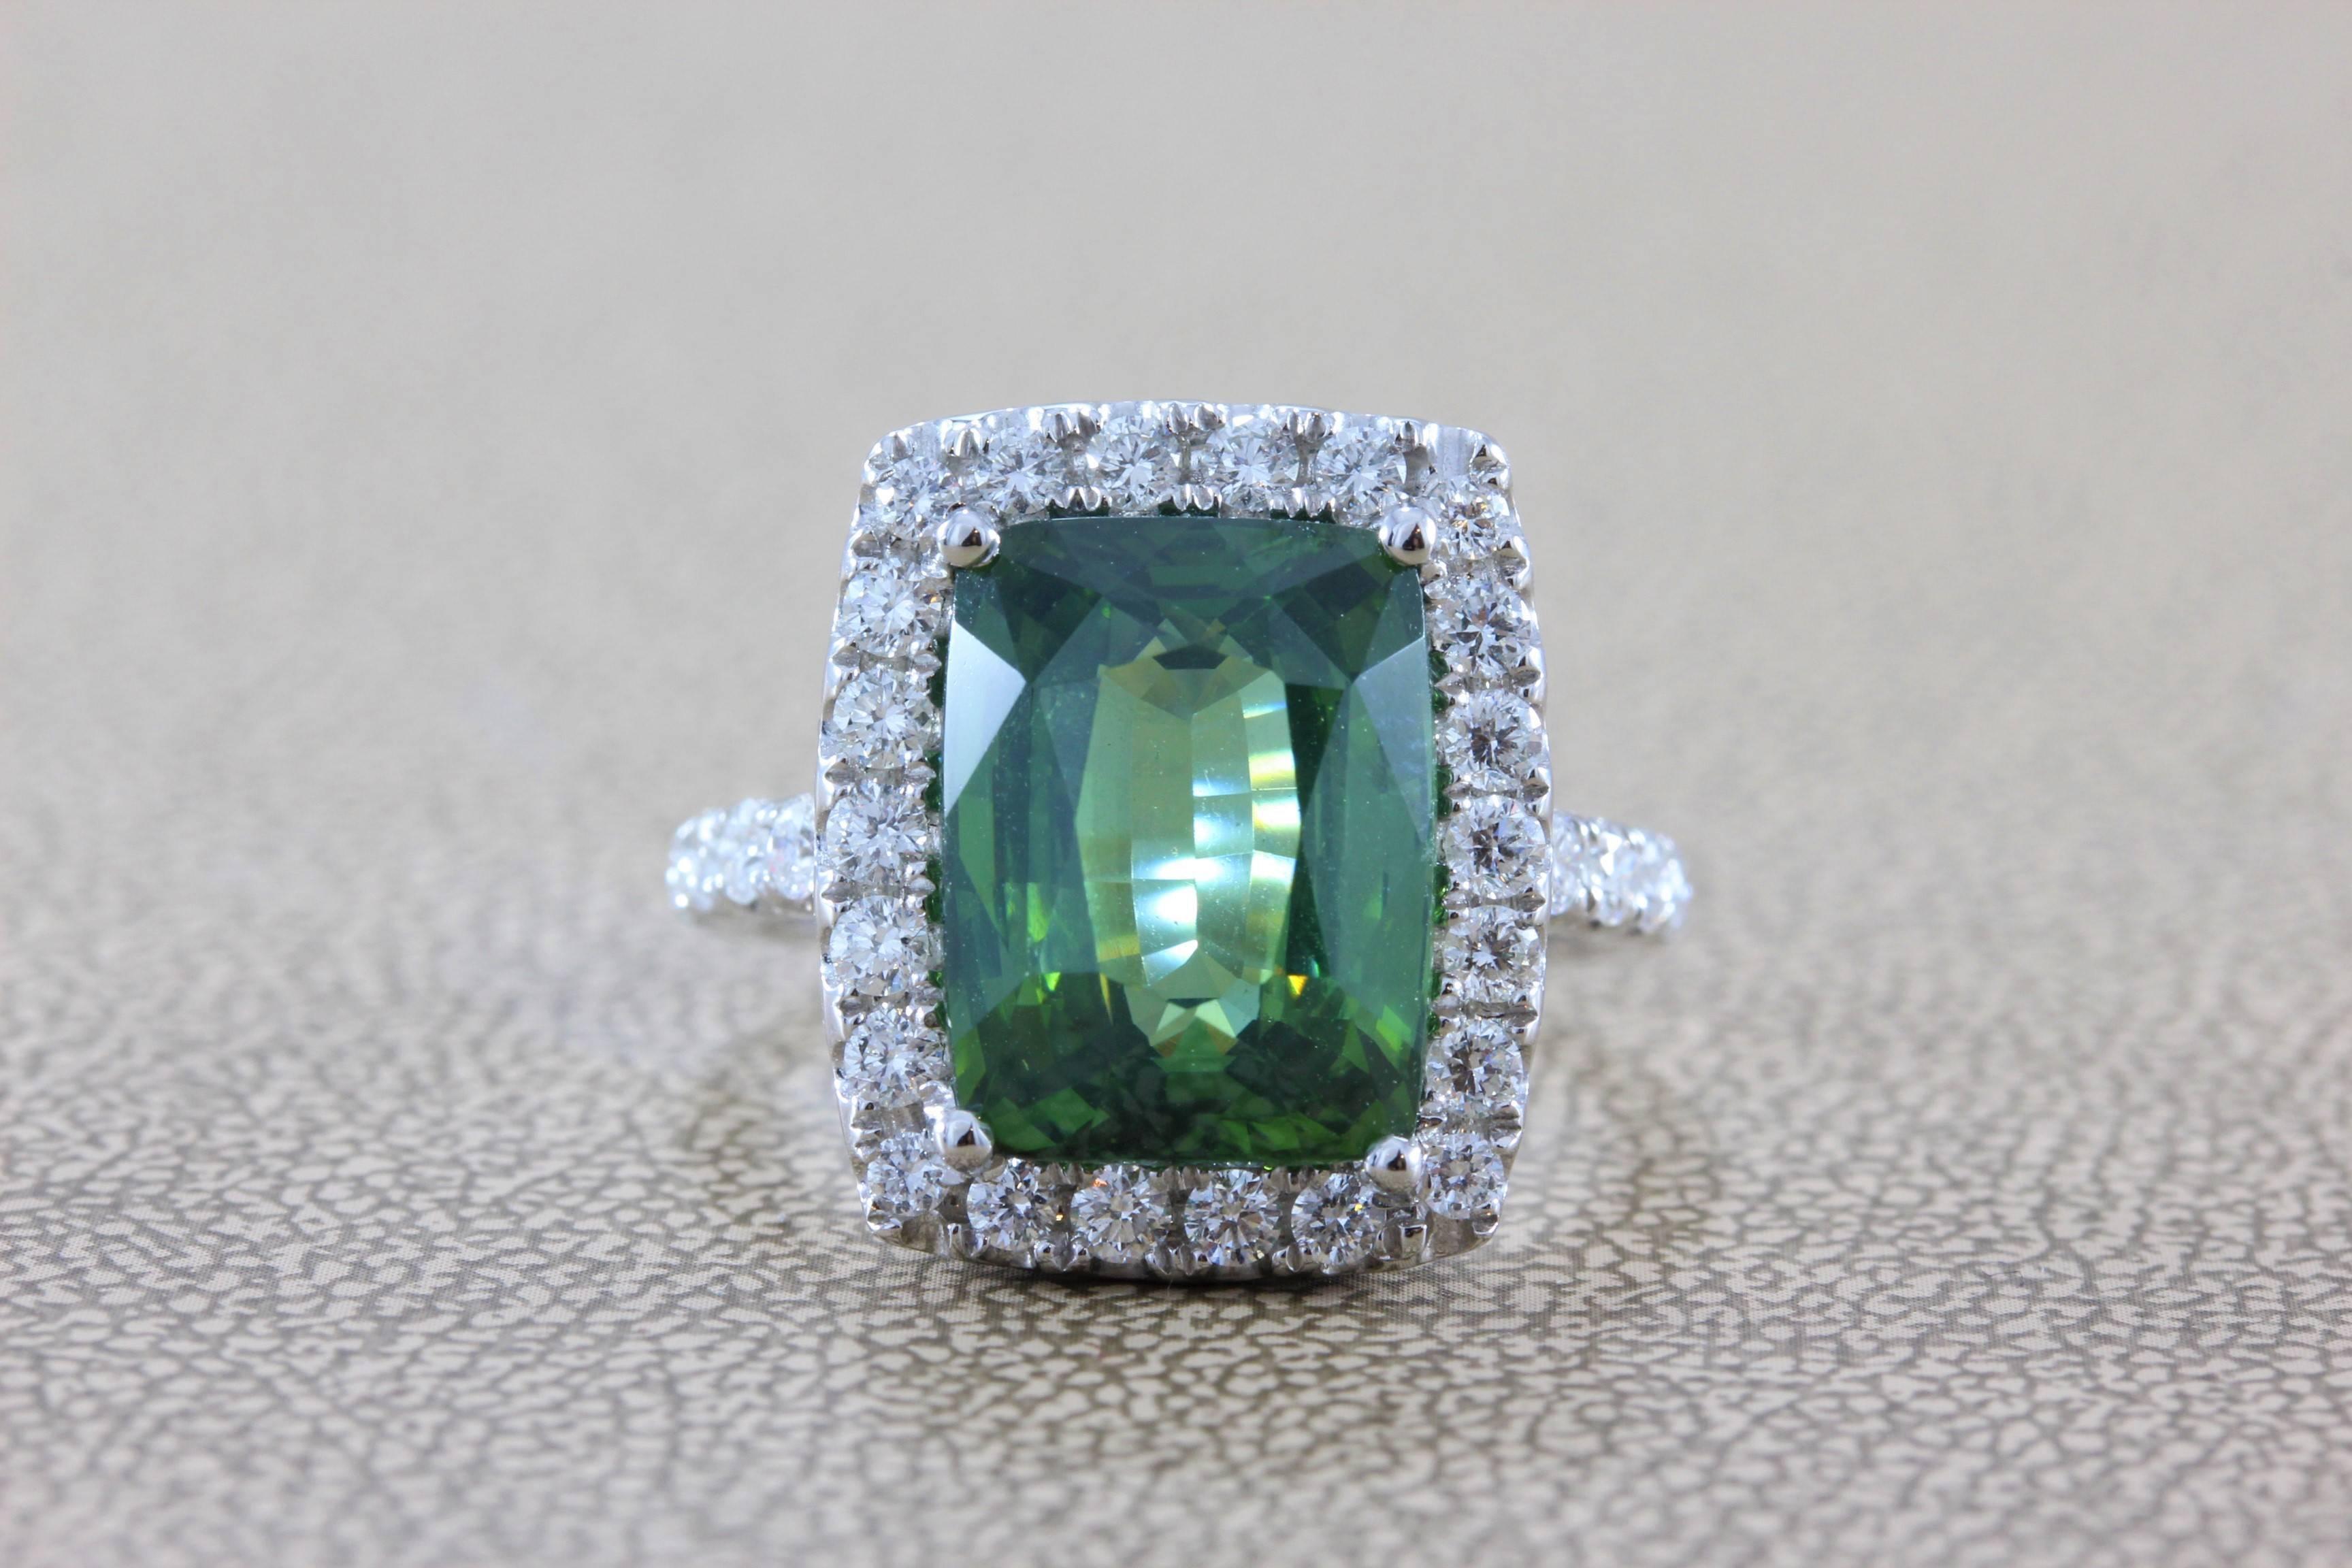 Ein schöner grüner Zirkon von 8,20 Karat im Smaragdschliff wird von 1,10 Karat Diamanten in VS-Qualität umrahmt.  Dieser stilvolle Ring ist mit detaillierten Goldarbeiten an den Rändern verziert.  Fassung aus 18 Karat Weißgold.

Ring Größe 6 ¾
